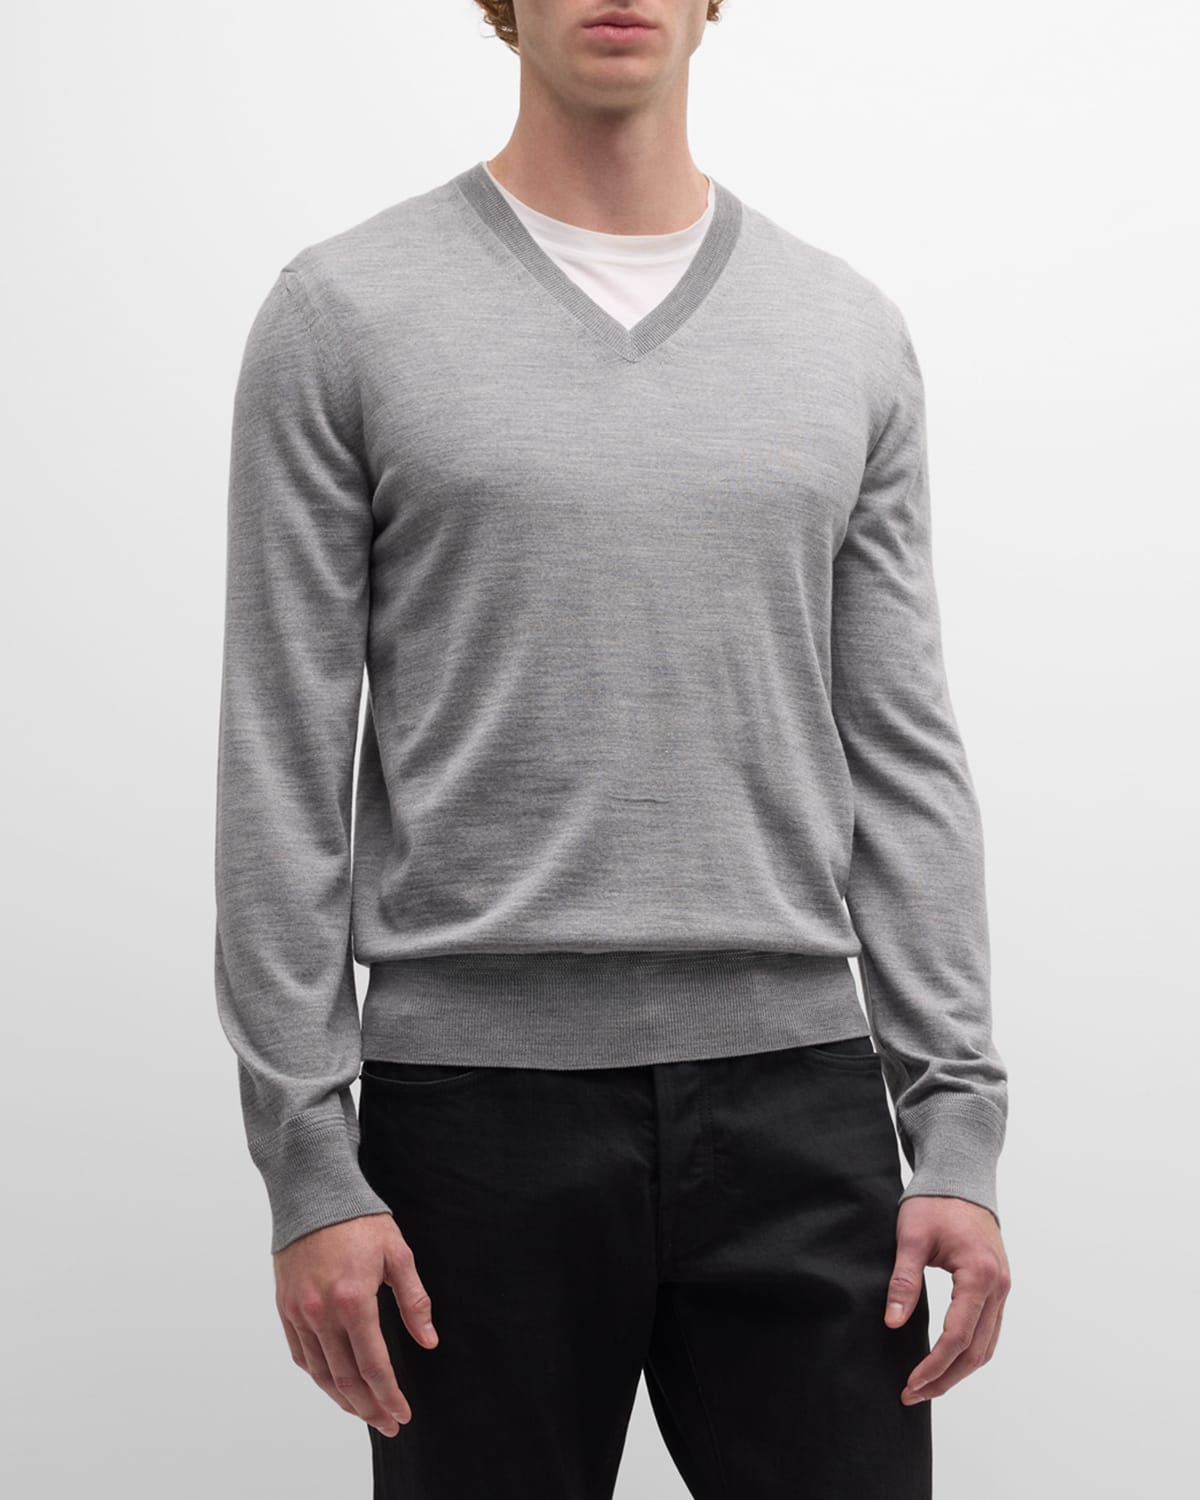 Tom Ford Men's Merino Wool V-neck Sweater In Light Grey